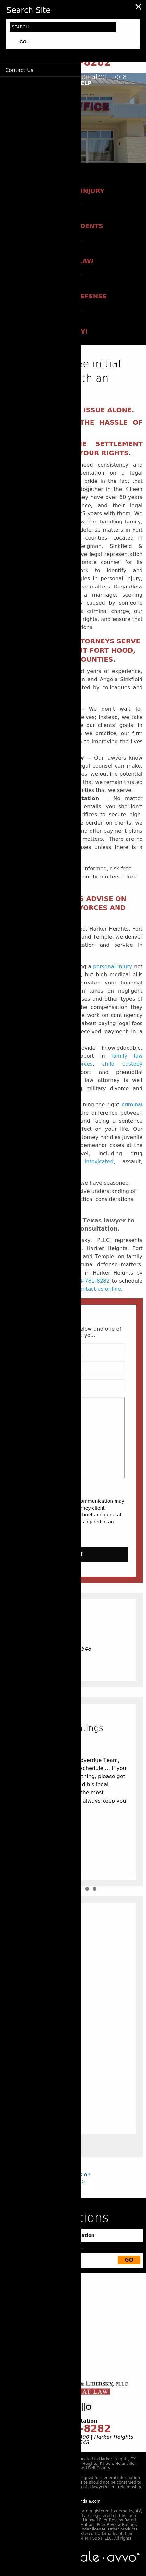 Silverblatt Law Office - Harker Heights TX Lawyers